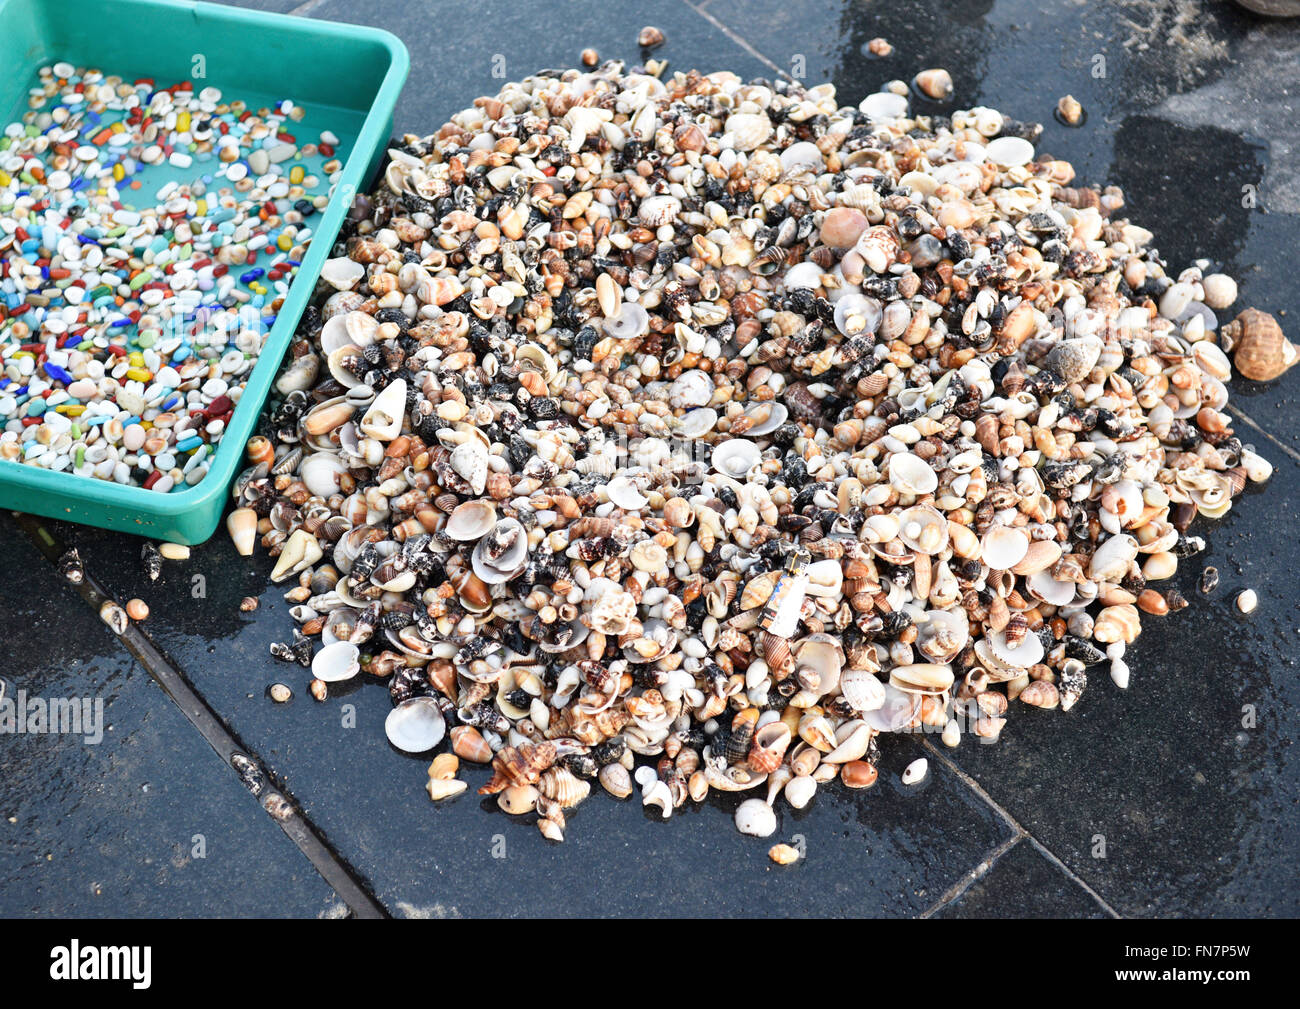 Visualizzazione della varietà di conchiglie, pietre colorate, pietre preziose, oro e raccolti dai fondali marini e le spiagge. Foto Stock